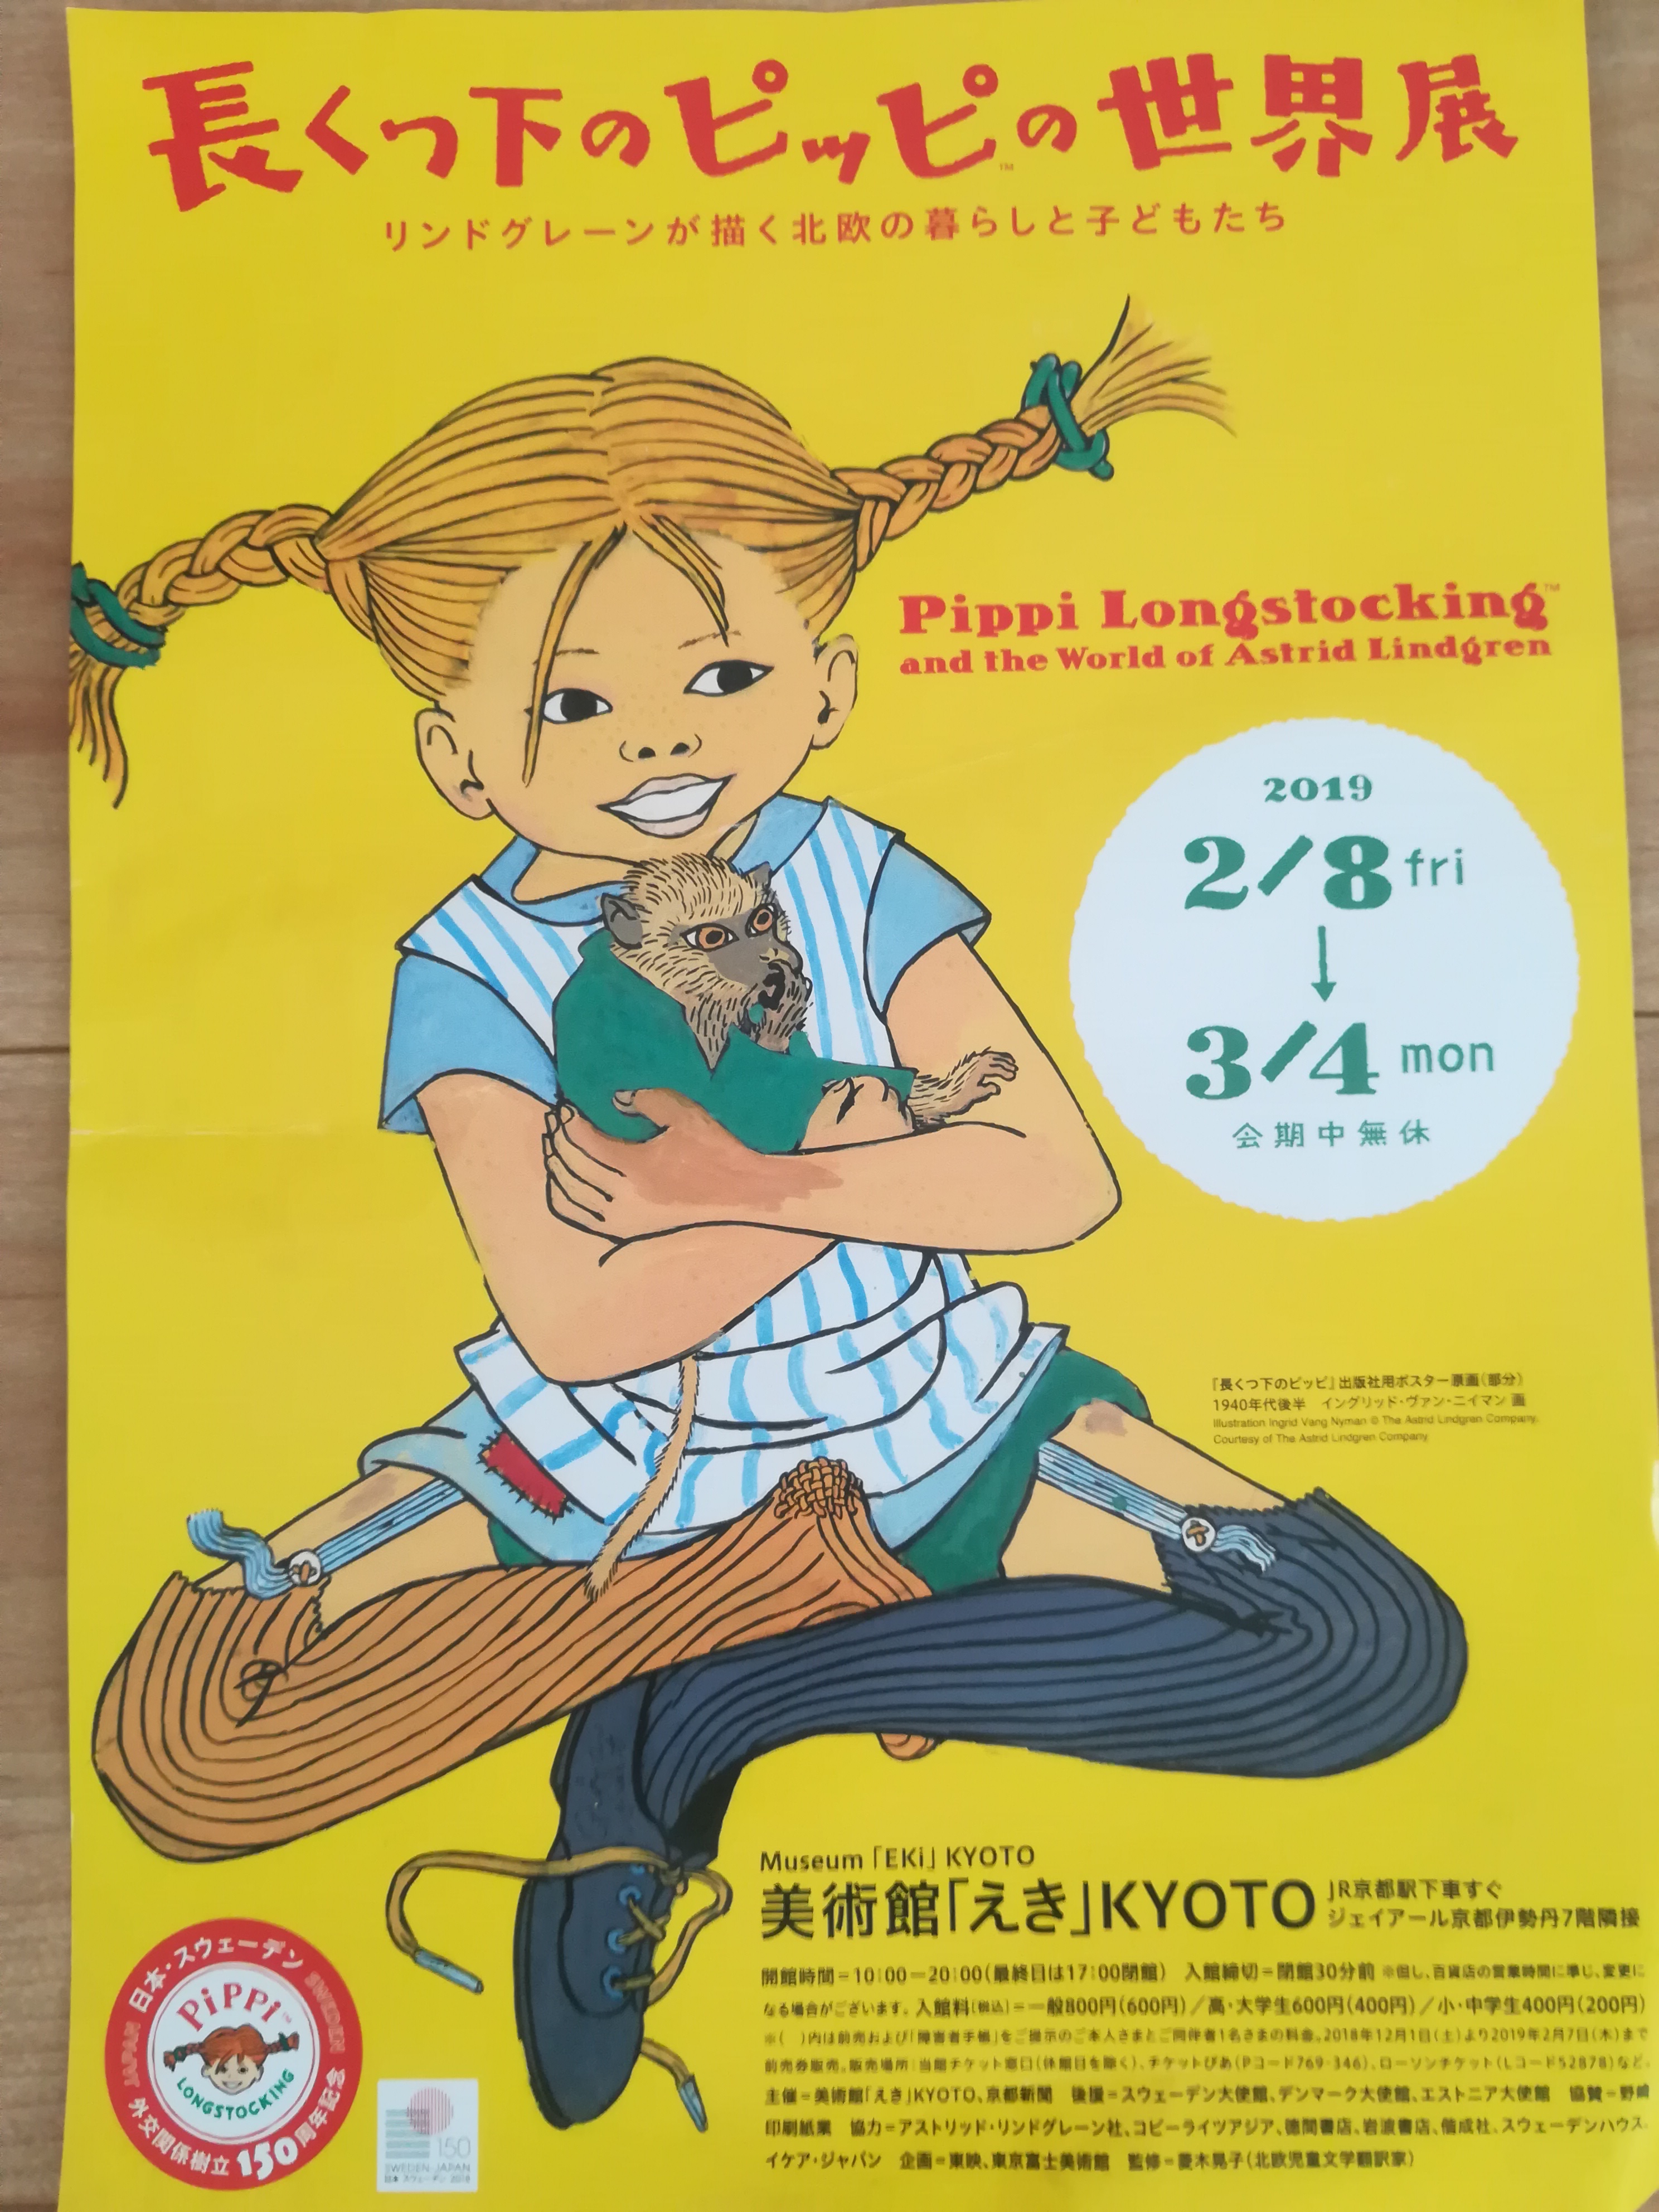 懐かしいっ 思わず呟いてしまう 京都駅で開催されている 長くつ下のピッピの世界展 に行ってきました 3月4日まで 滋賀のママがイベント 育児 遊び 学びを発信 シガマンマ ピースマム